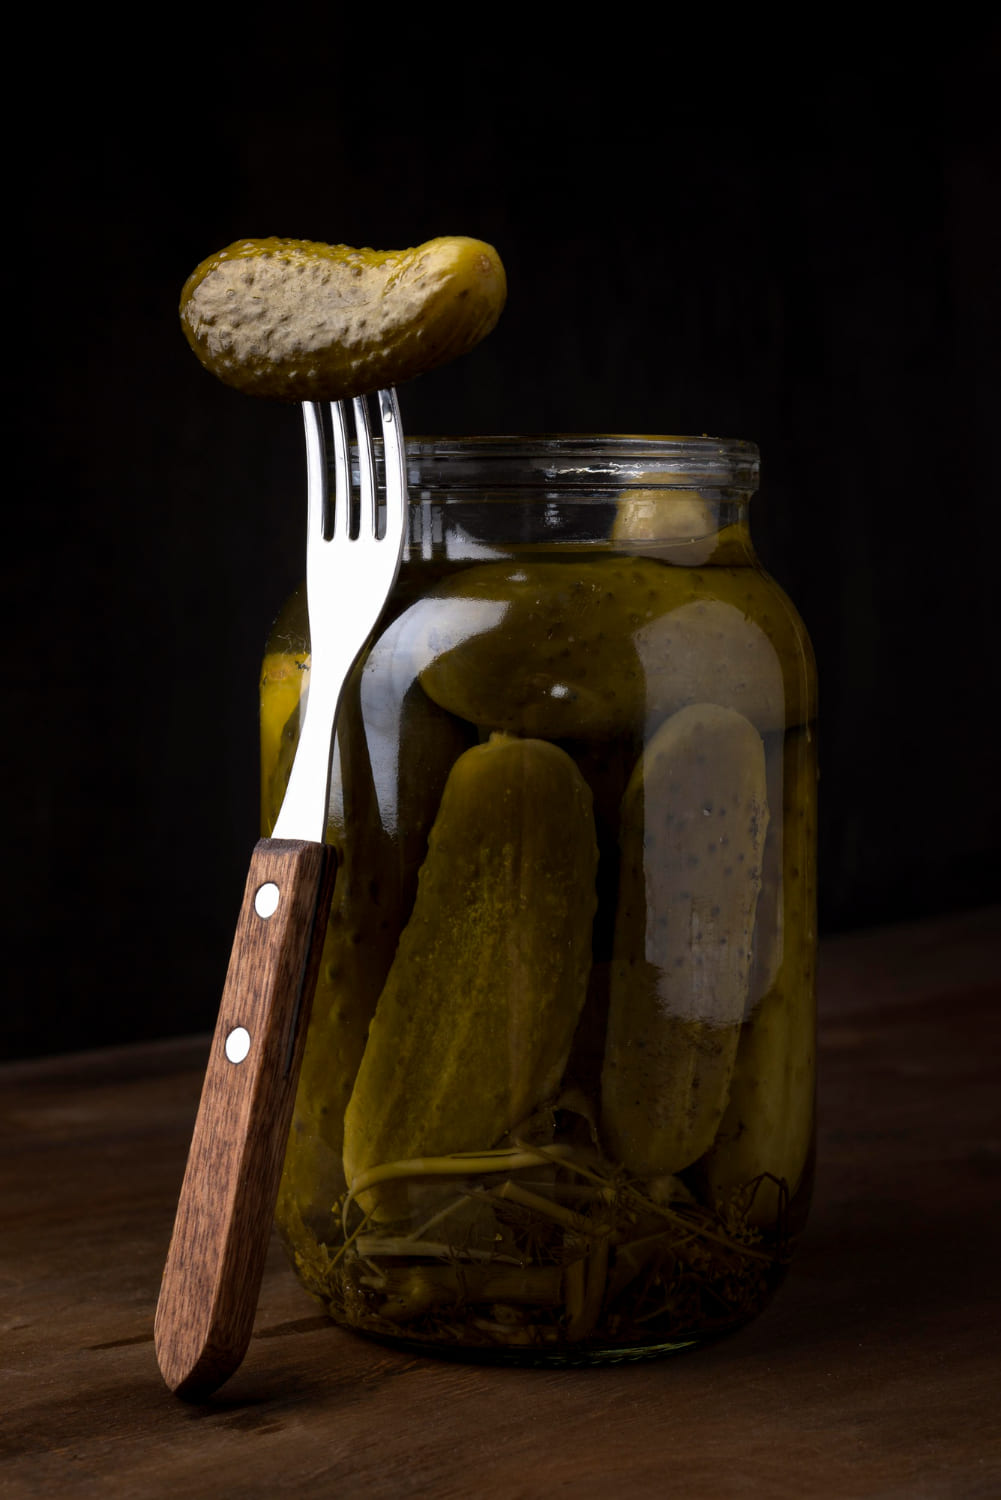 jark pickles and fork